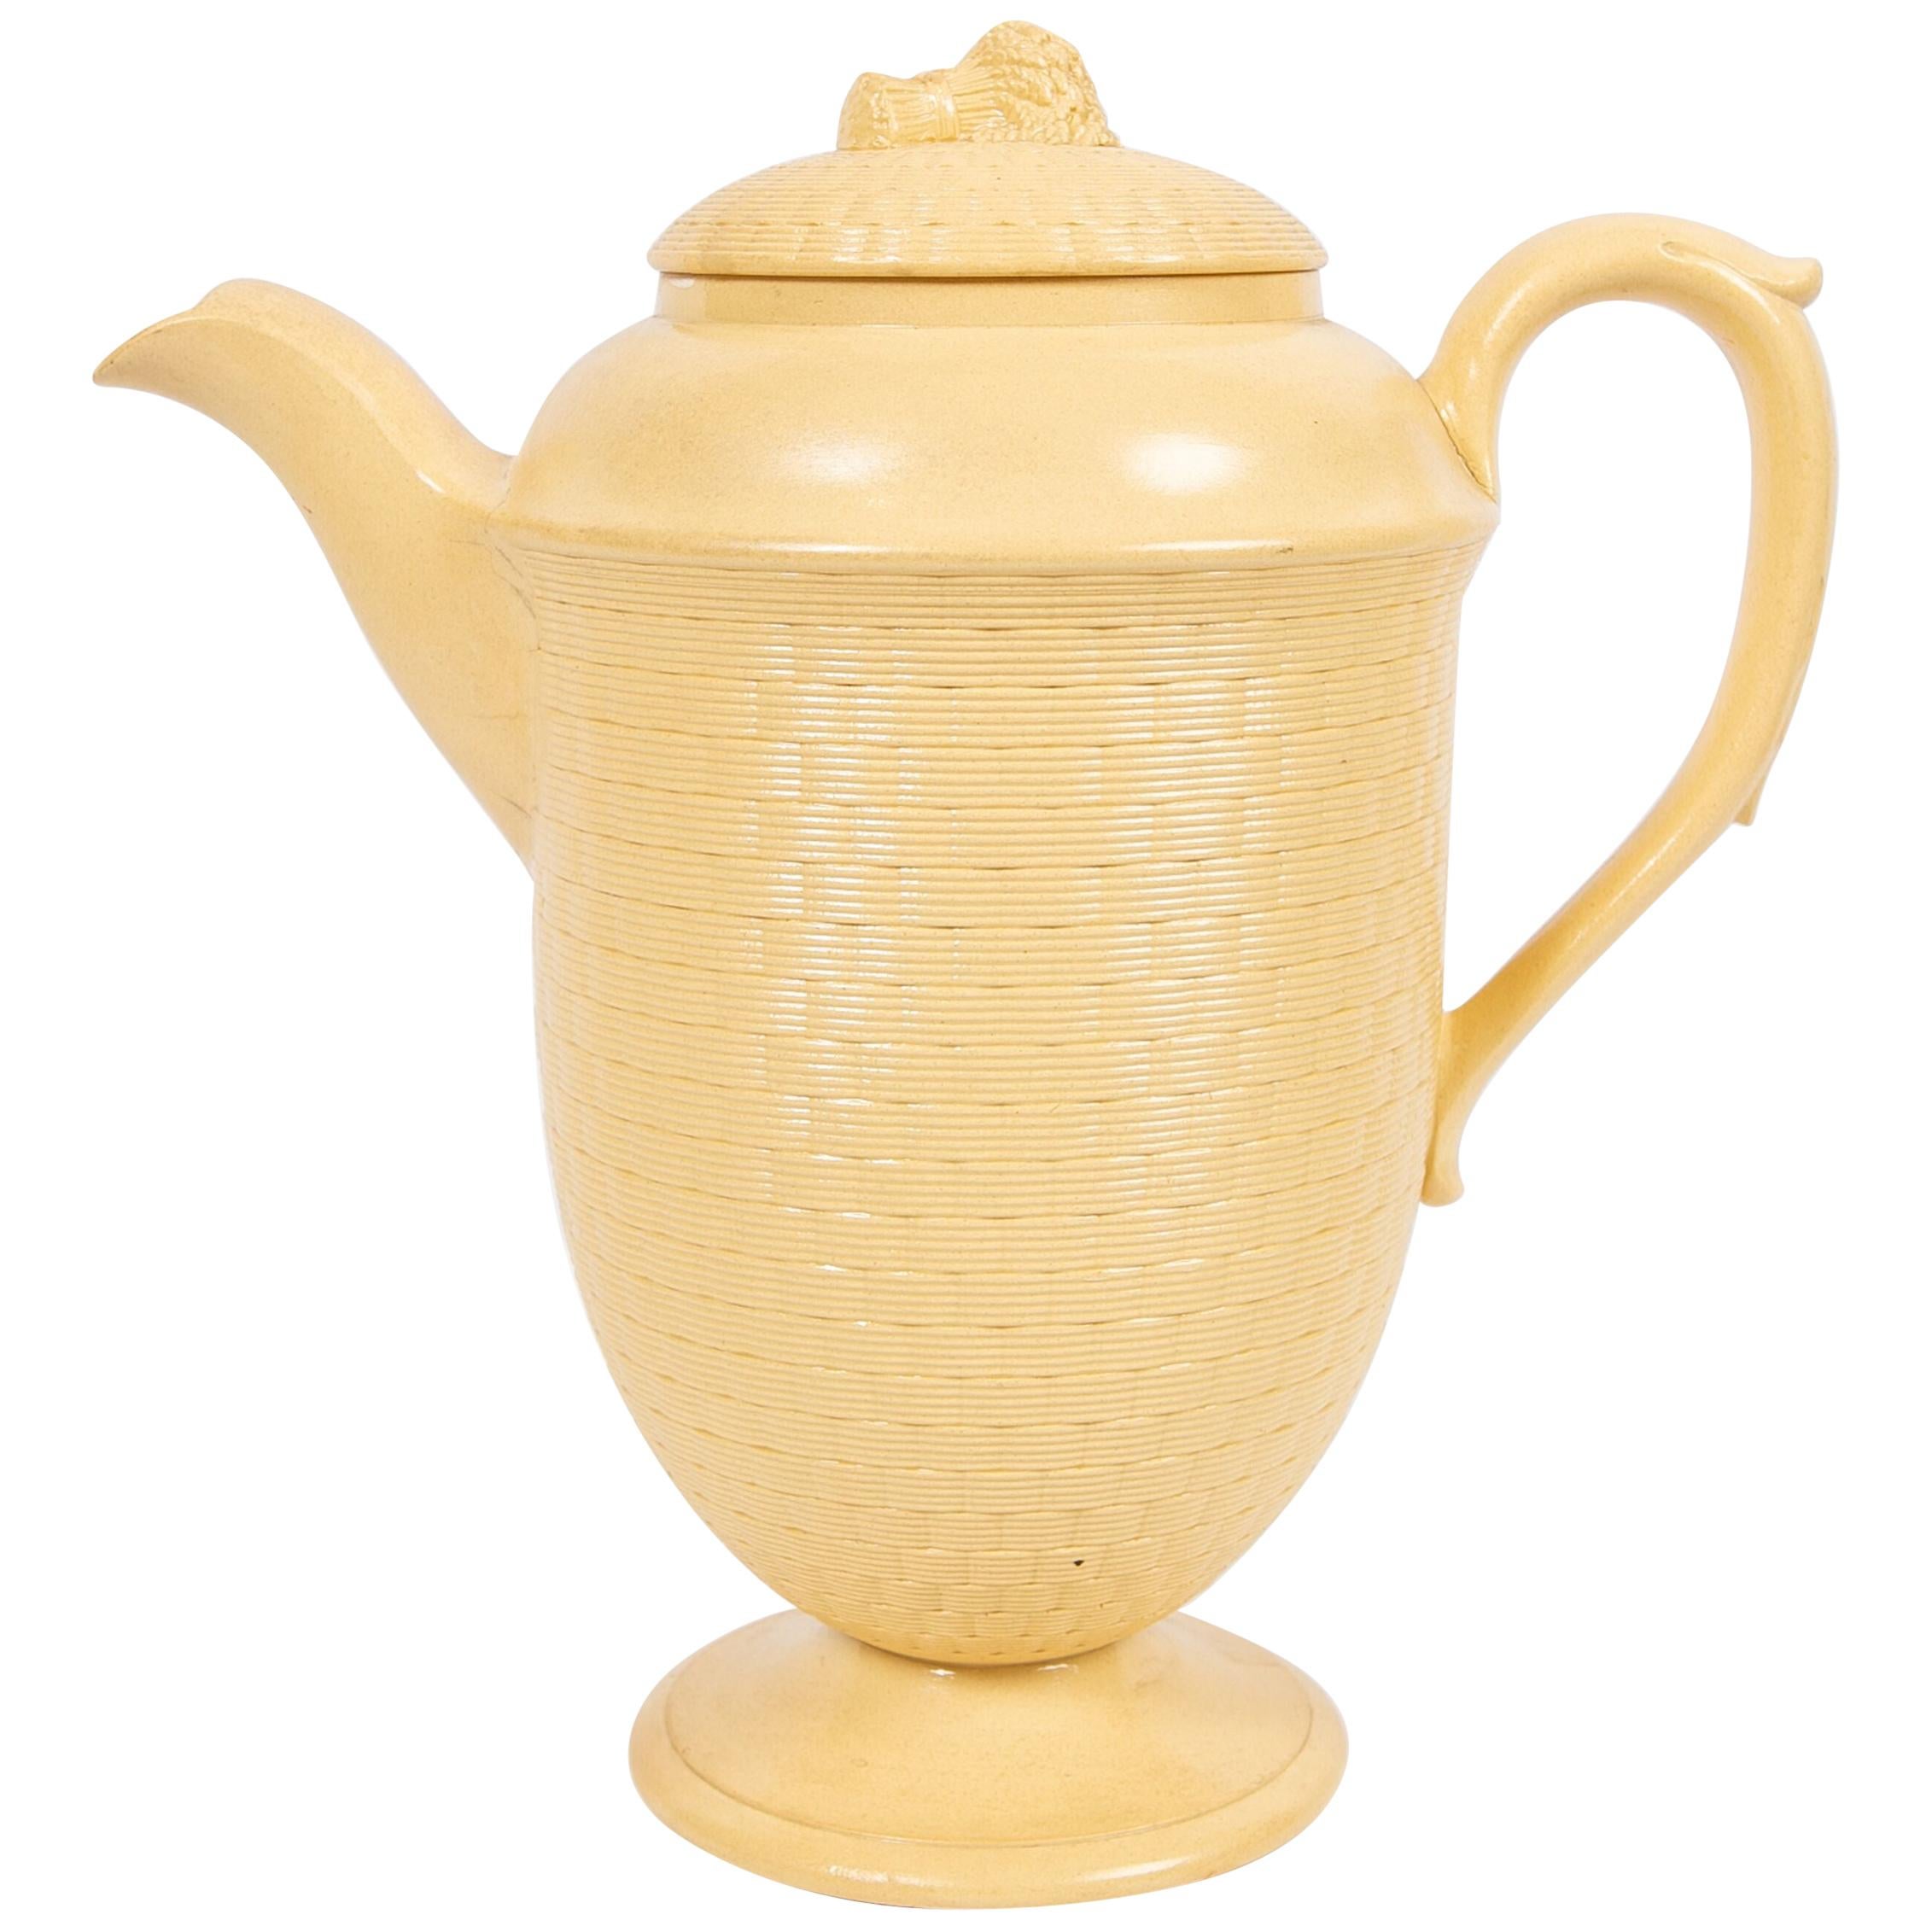 Large Antique Wedgwood Coffee Pot of Glazed Cane-Yellow Stoneware, circa 1830